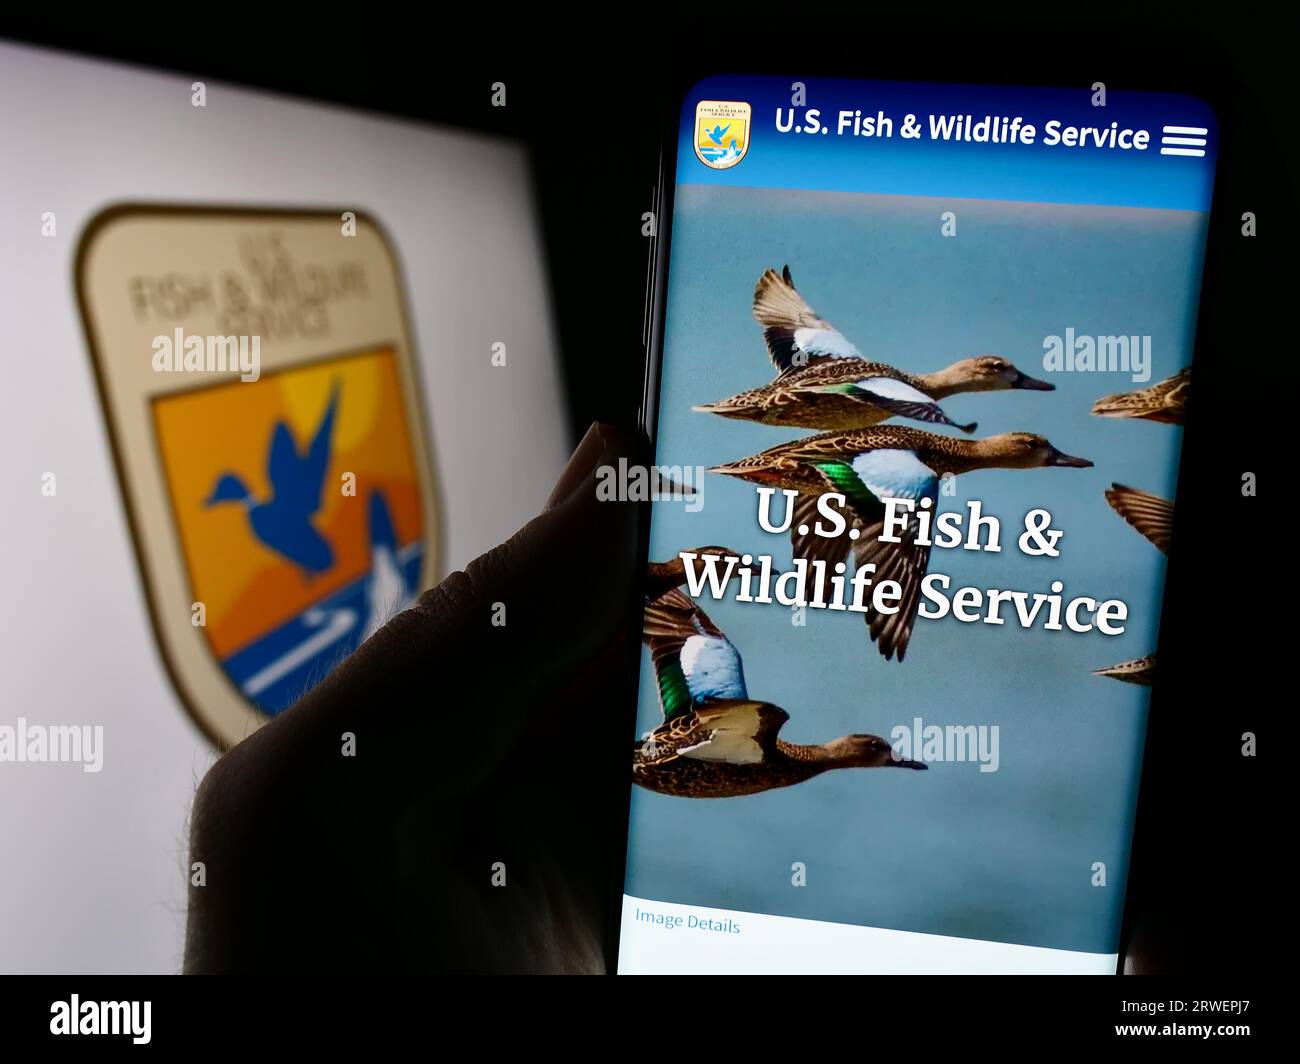 Persona che tiene in mano il telefono cellulare con il sito Web del servizio Fish and Wildlife Service (FWS) degli Stati Uniti sullo schermo con sigillo. Concentrarsi sul centro del display del telefono. Foto Stock